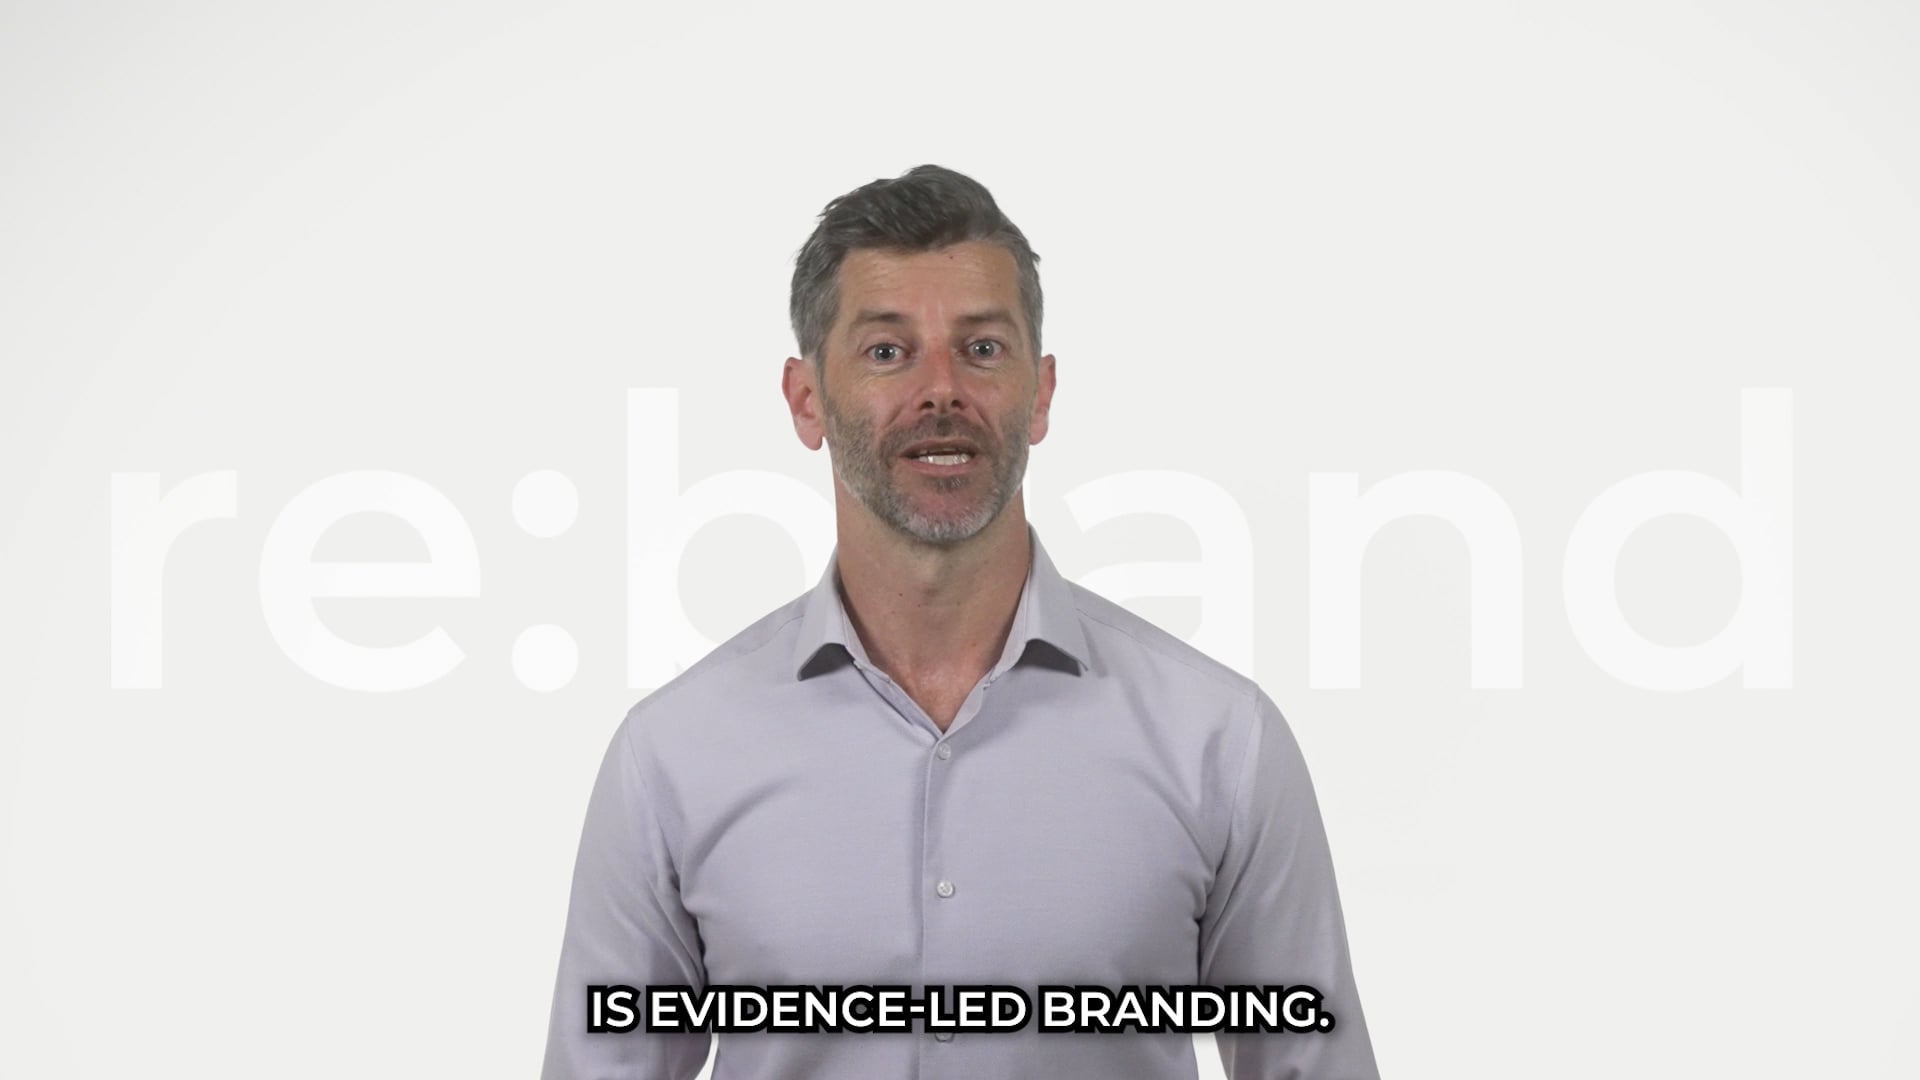 Evidence-led branding